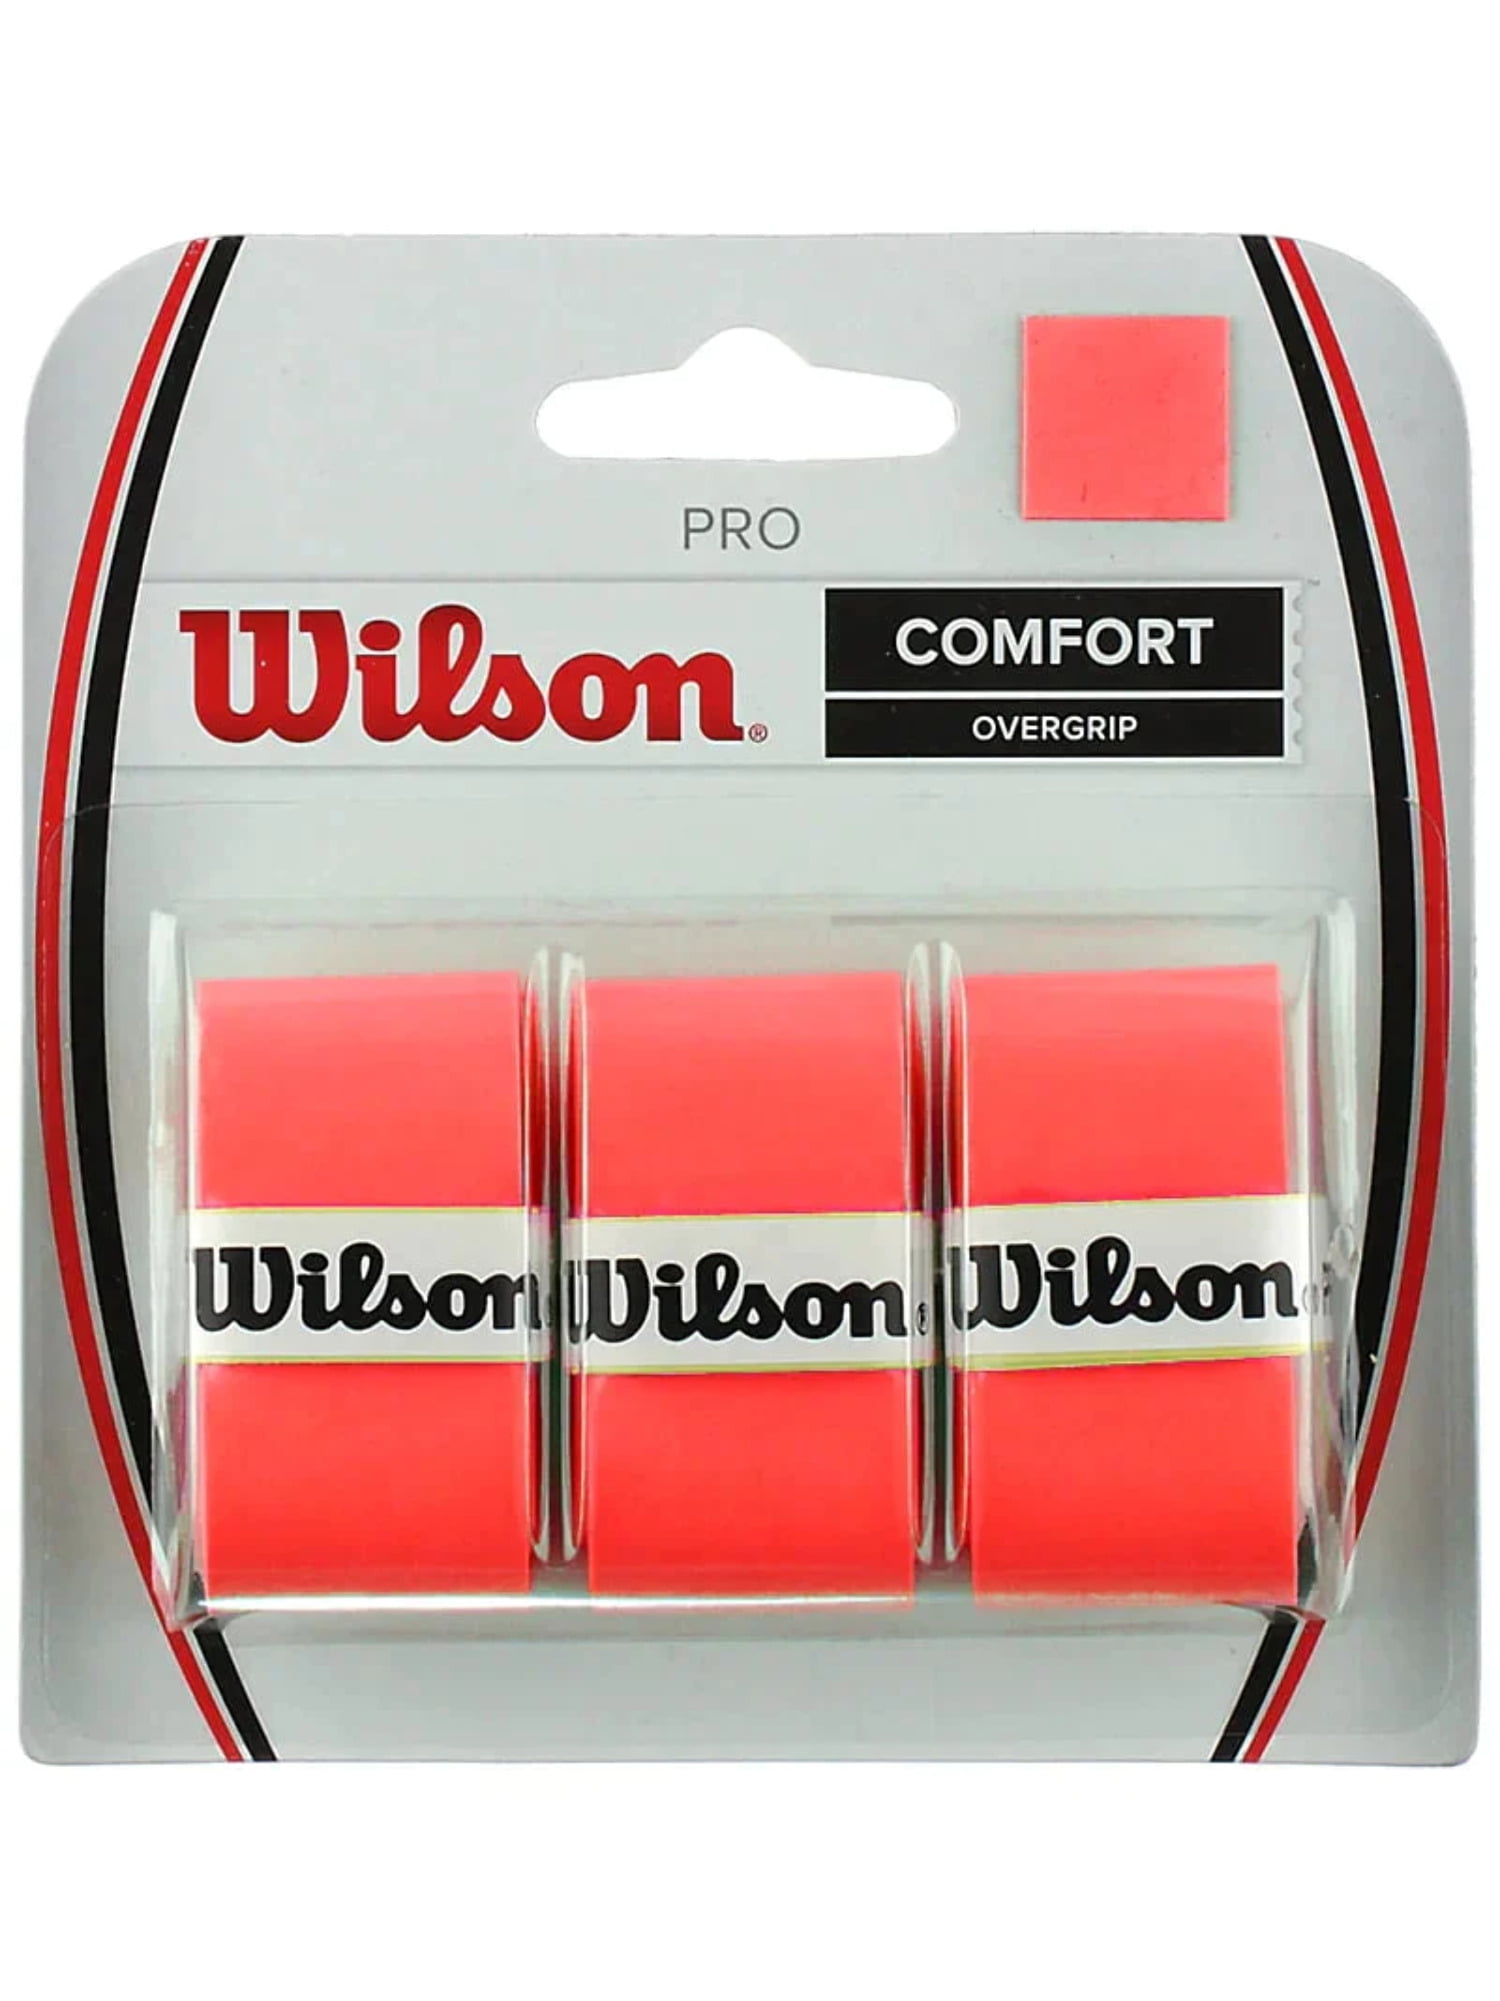 Grip Wilson Comfort Overgrip Pro P/ Raqueta De Tenis - Multicolor — El Rey  del entretenimiento